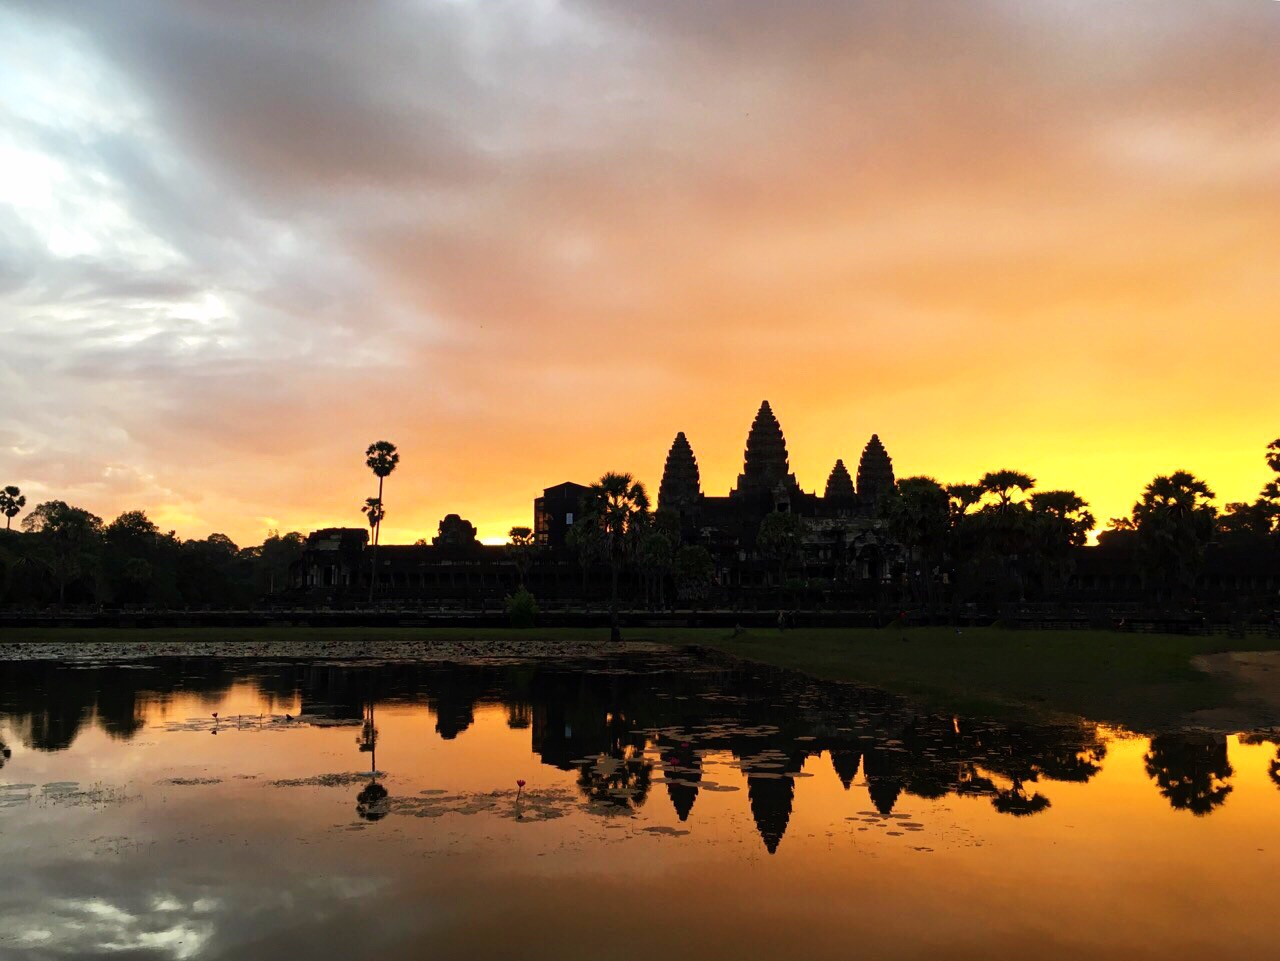 Siem Reap, Cambodia – Angkor Wat and more